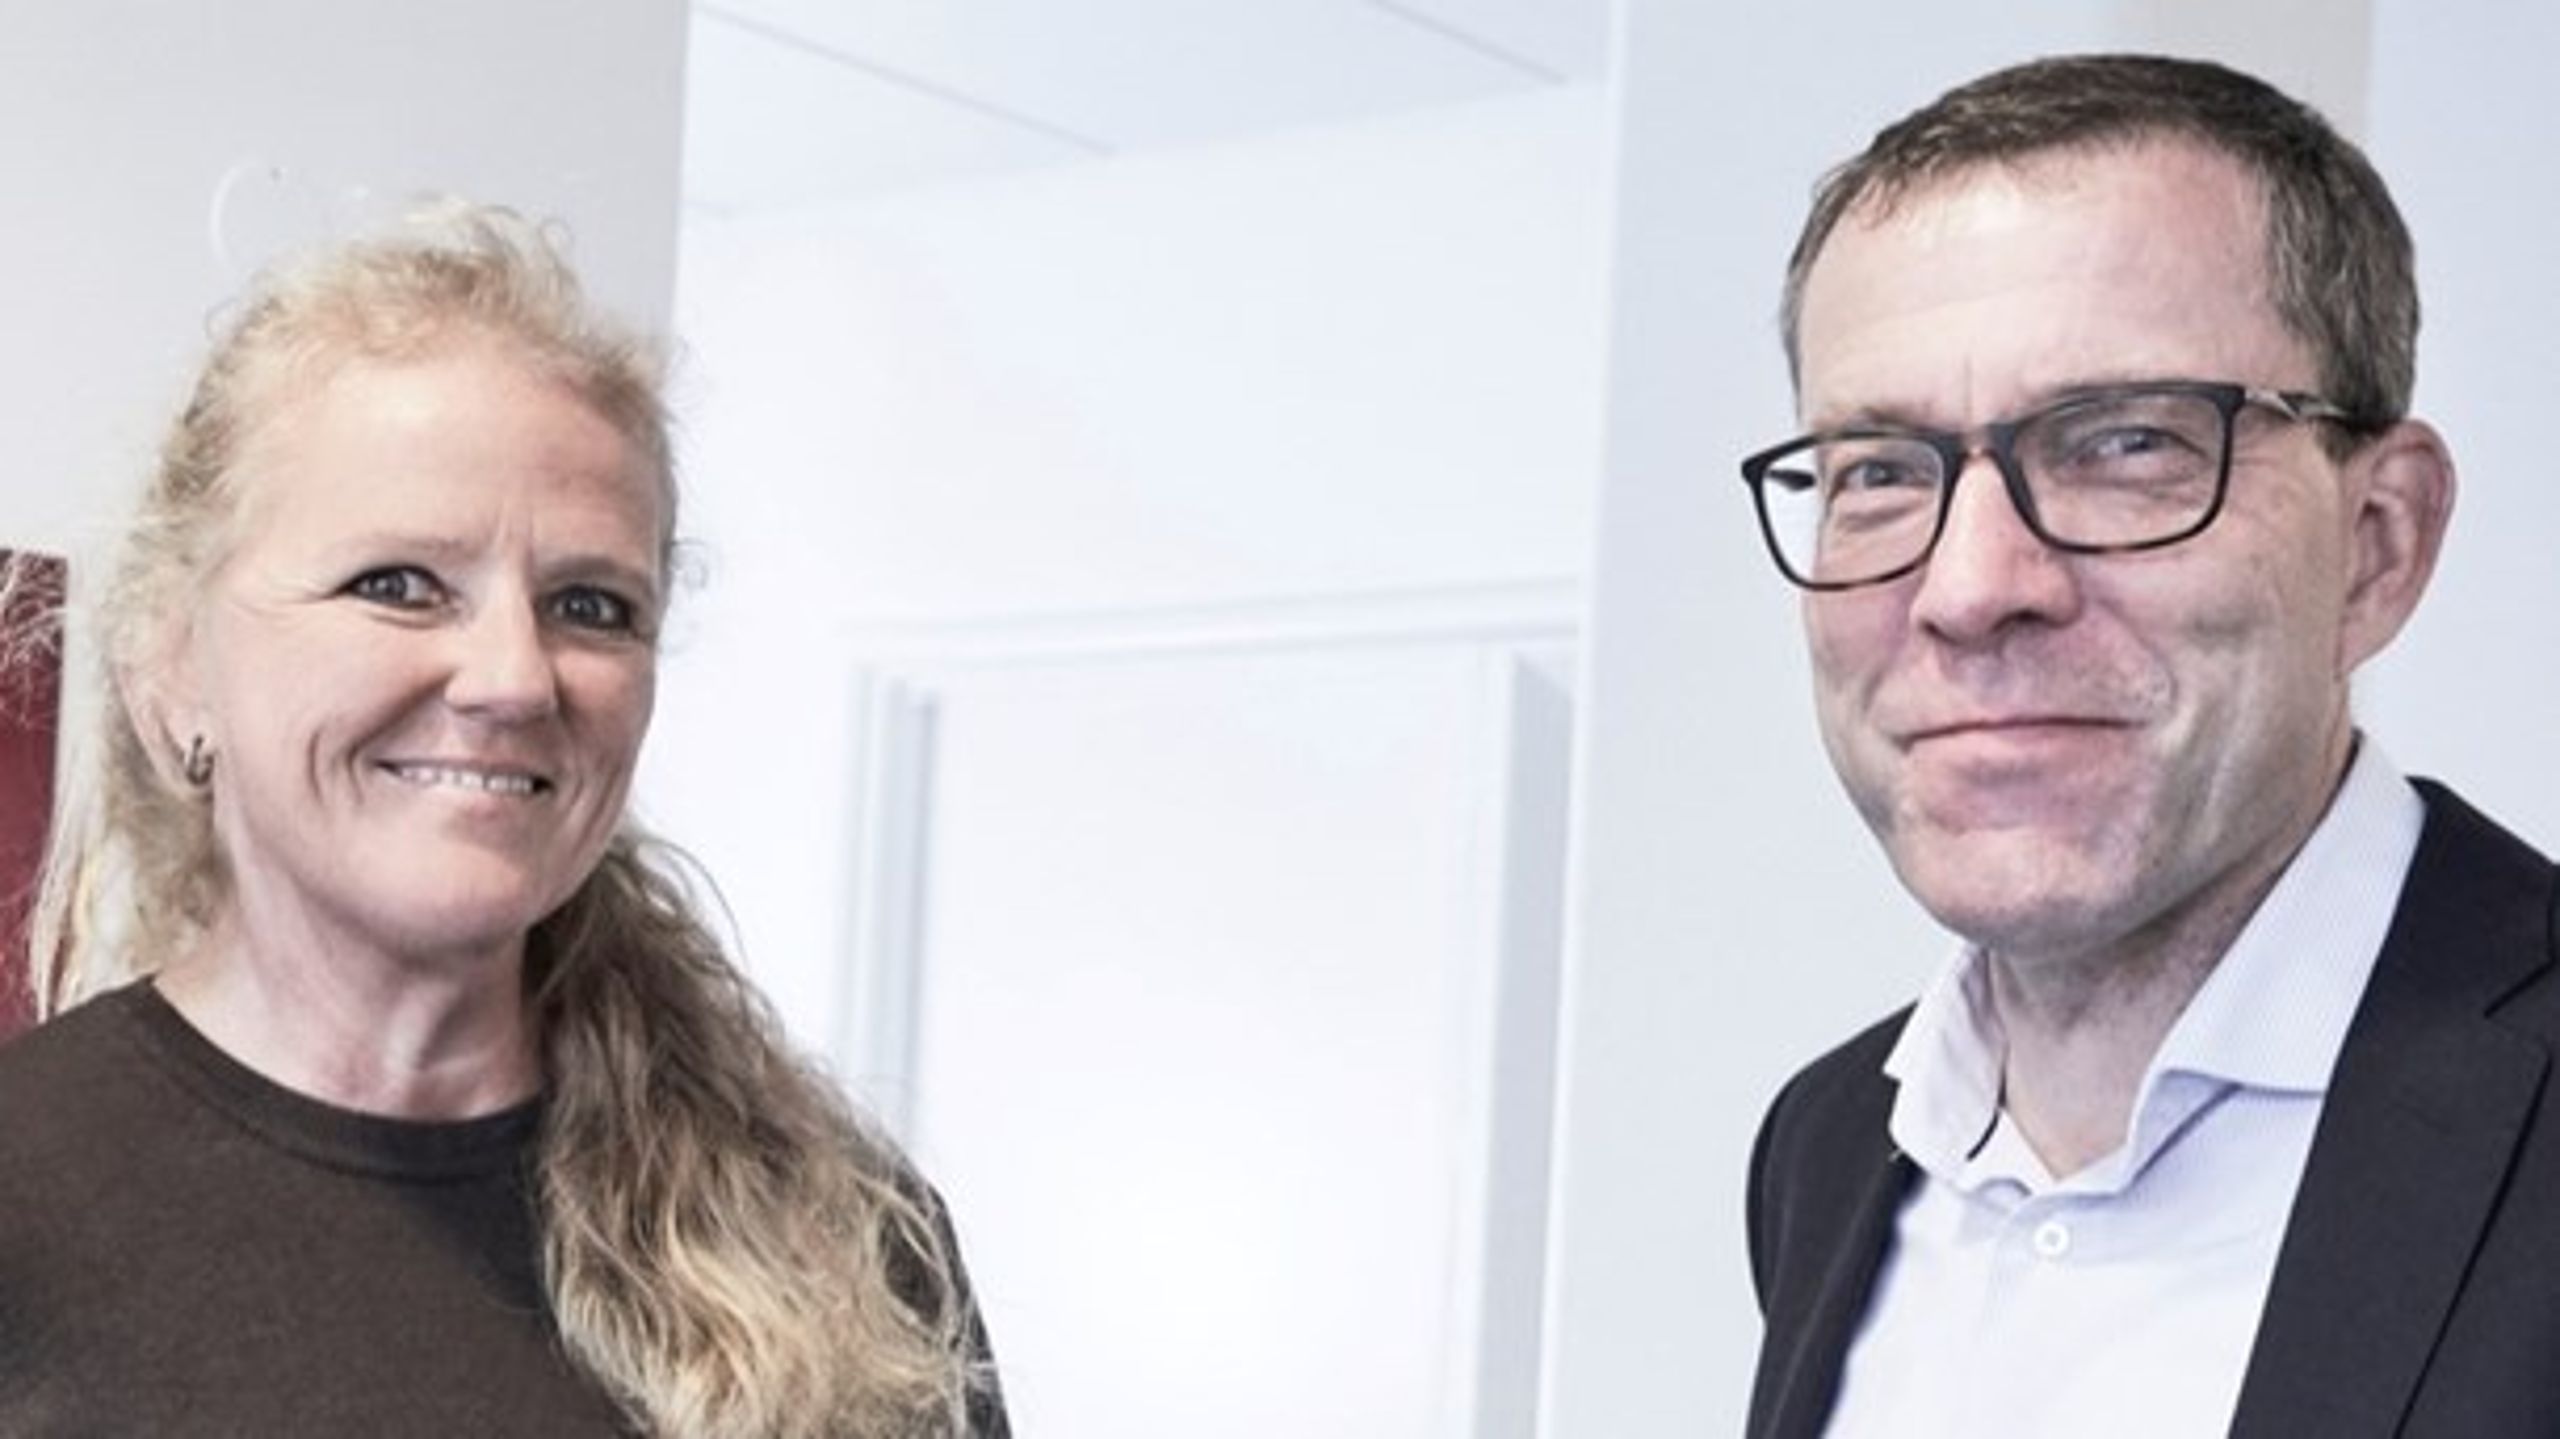 DRs seneste kampagne mod "de dyre direktører" bidrager kun til skabe et øget skel mellem den offentlige og den private sektor, skriver Tina Overgaard og Henning Meldgaard.